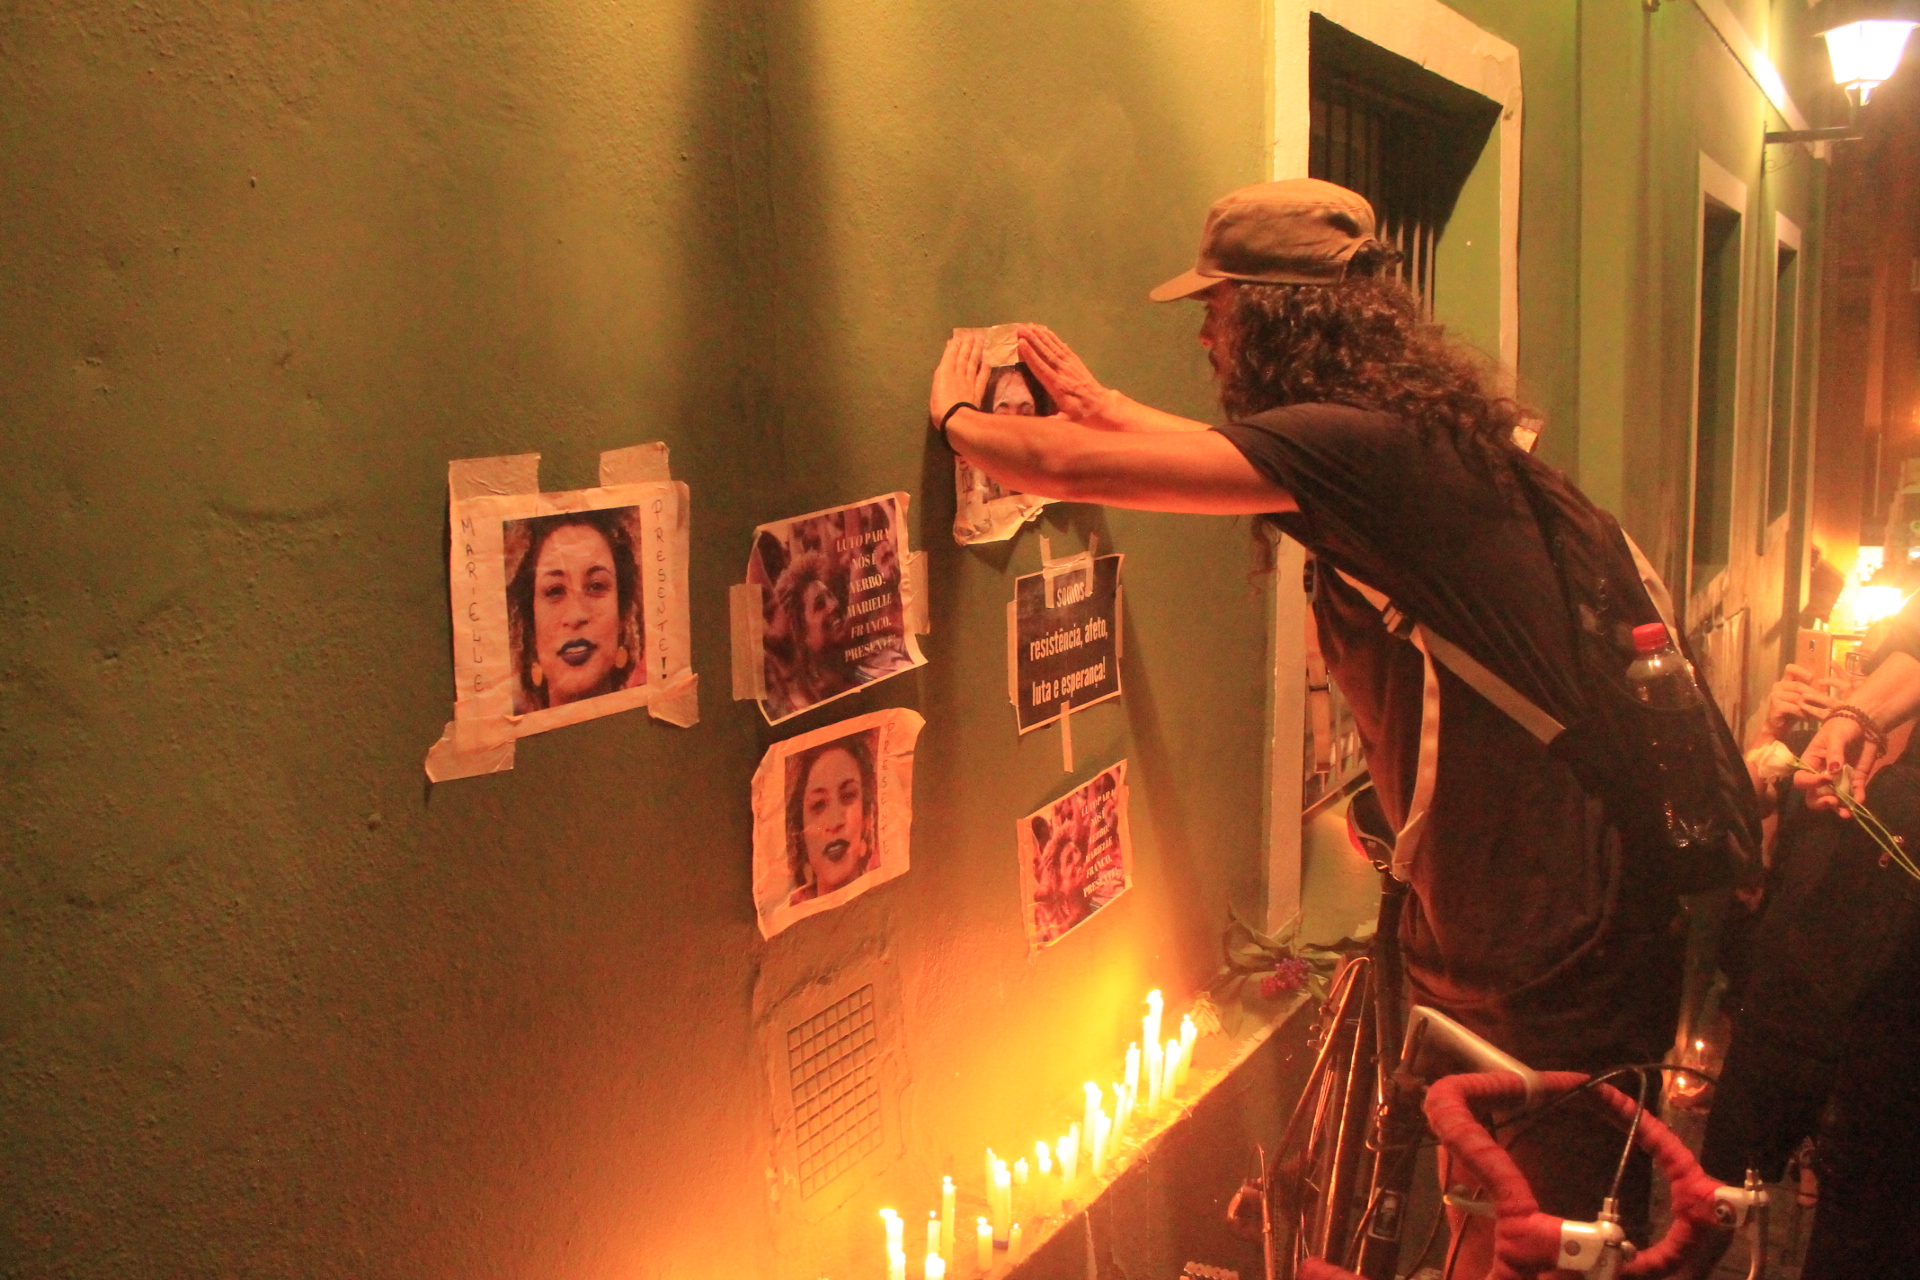 Os protestantes colaram cartazes nas paredes dos prédios ao lado da escadaria da Igreja Nossa Senhora dos Homens Pretos, e acenderam velas para homenagear Marielle Franco. Foto: Fernando Lisboa.